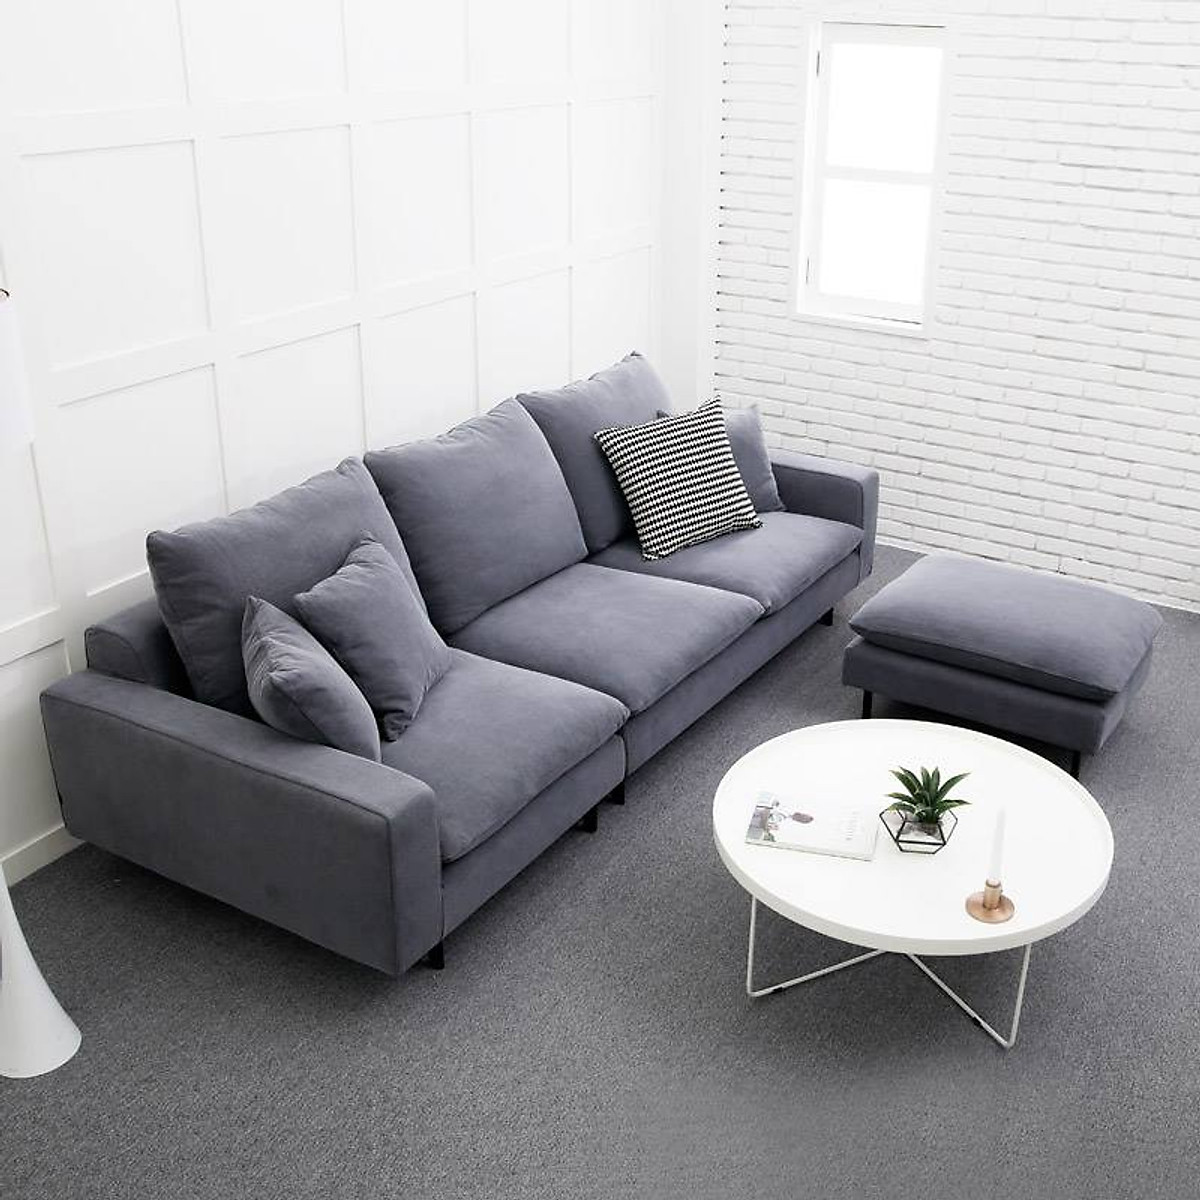 Sofa vải phòng khách 2.4m, vải màu ghi